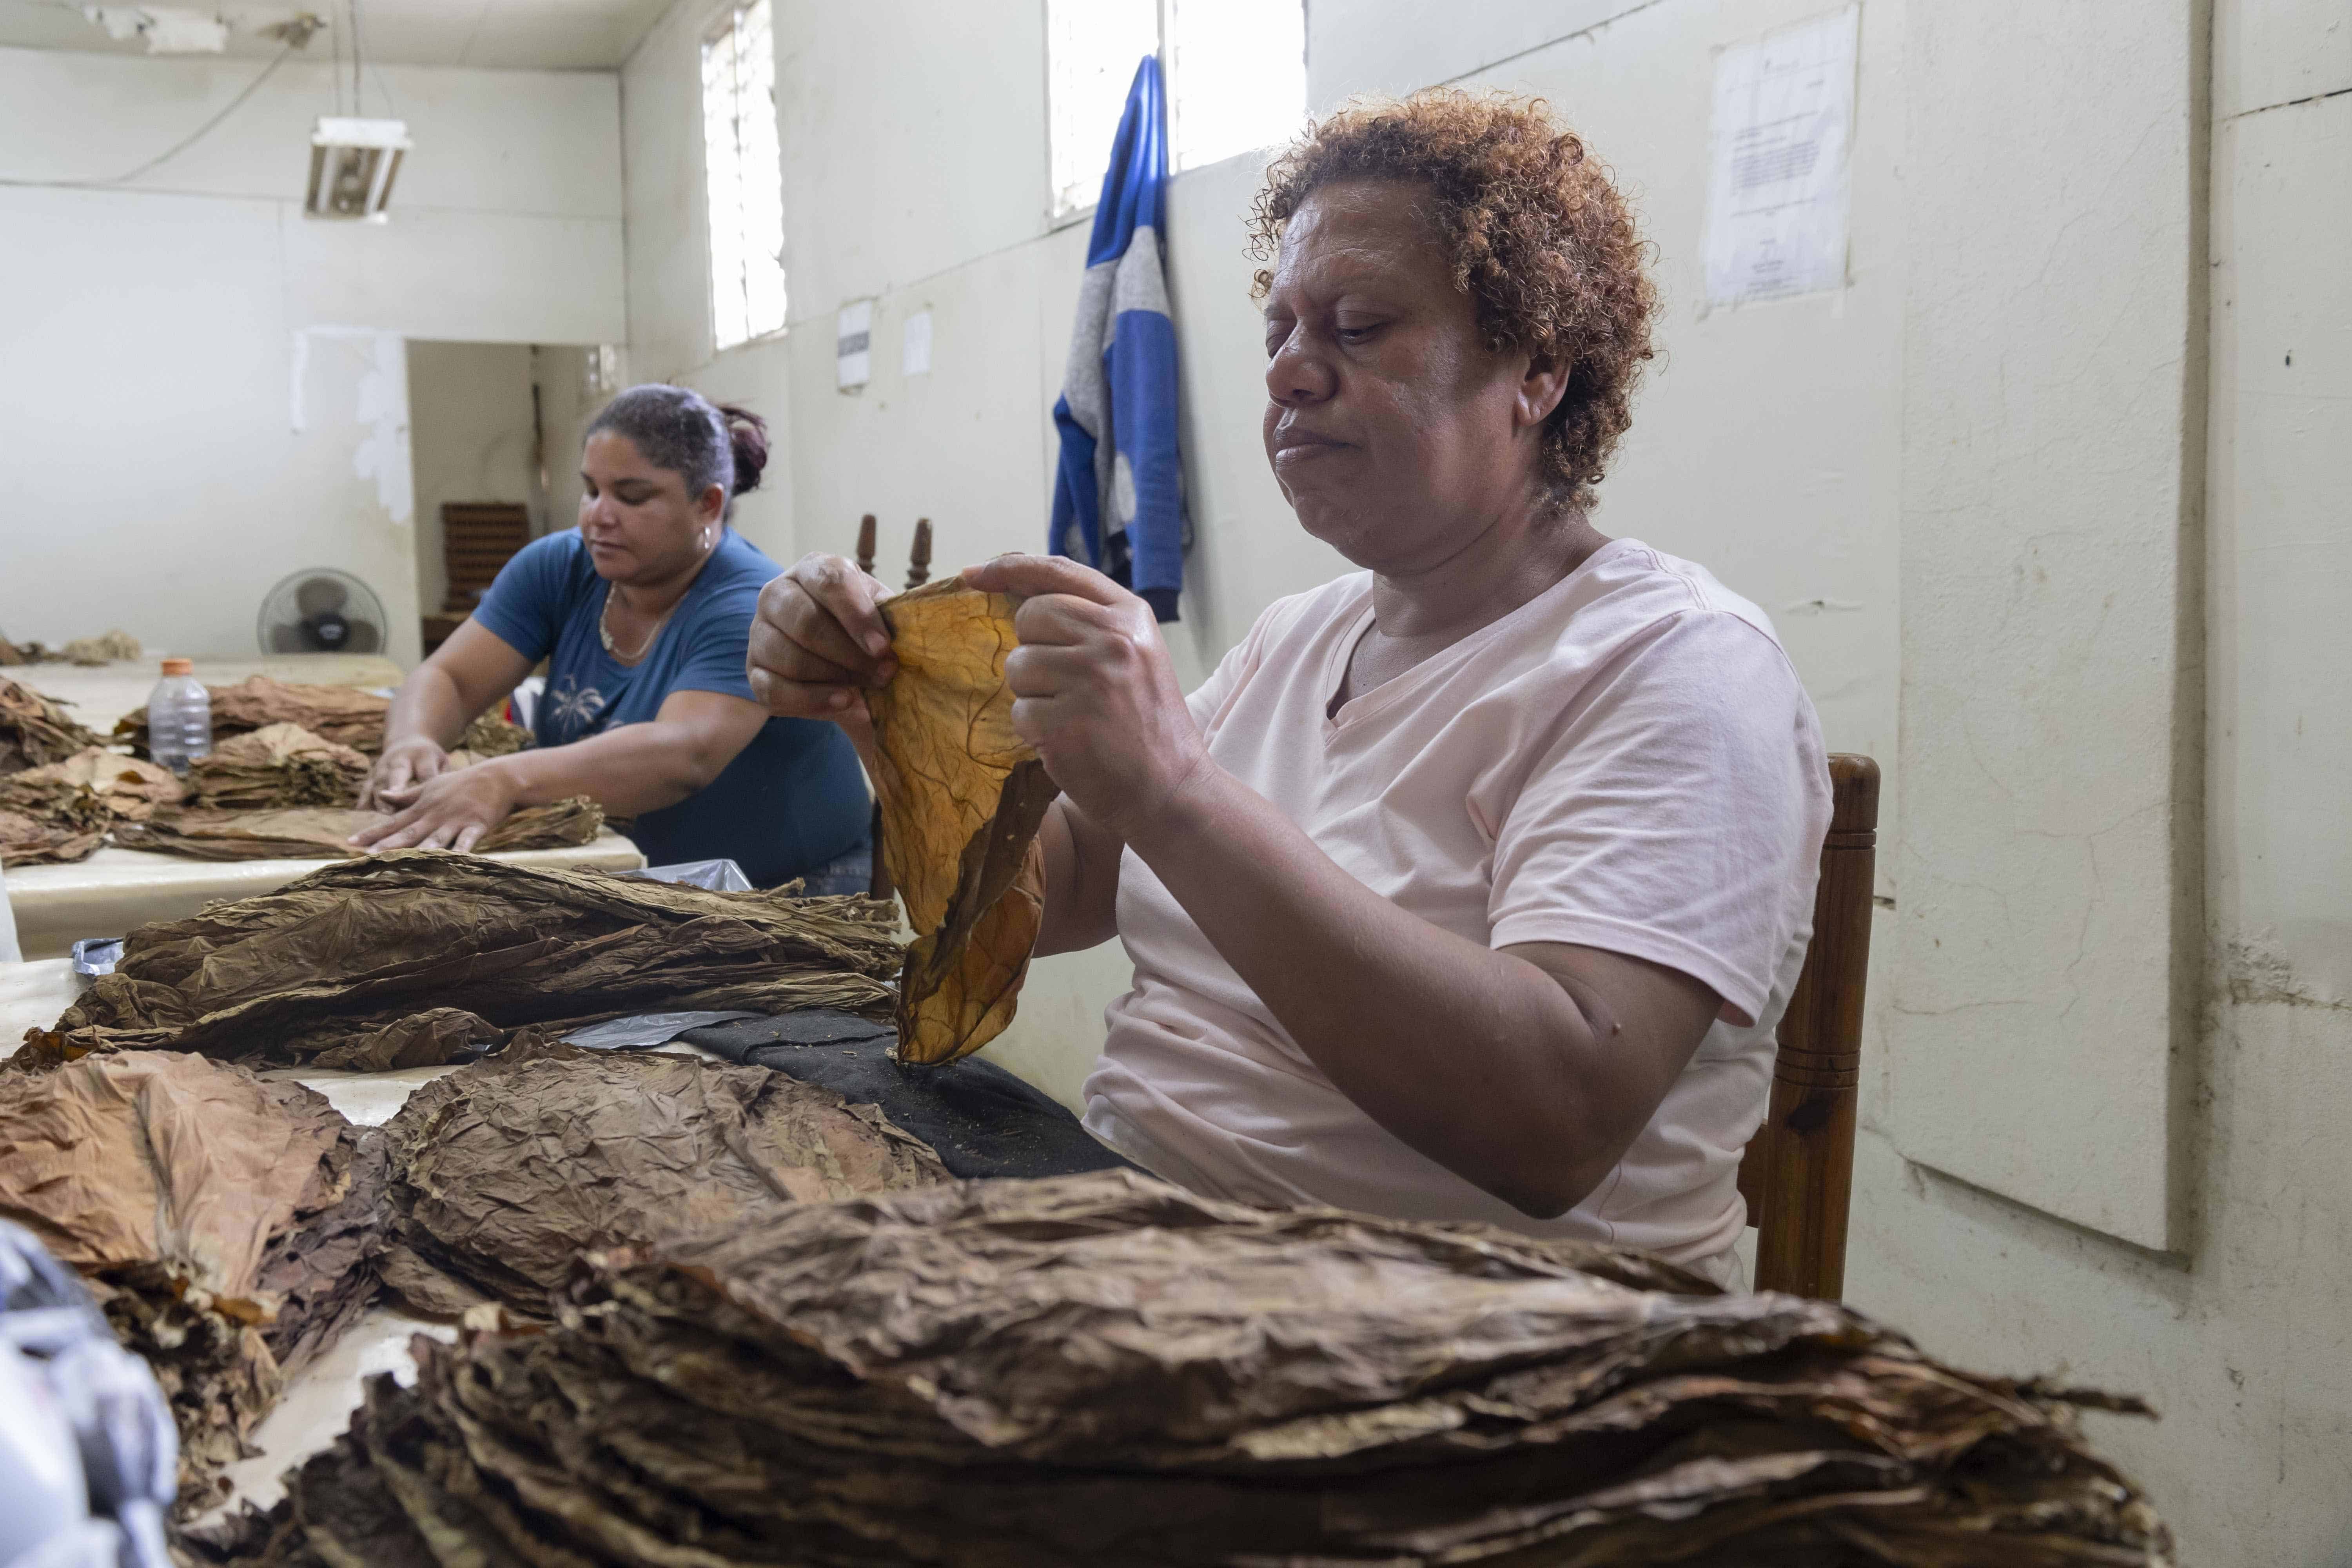 Las mujeres ocupan la mayoría de los empleos que genera el sector tabaco en las fábricas.